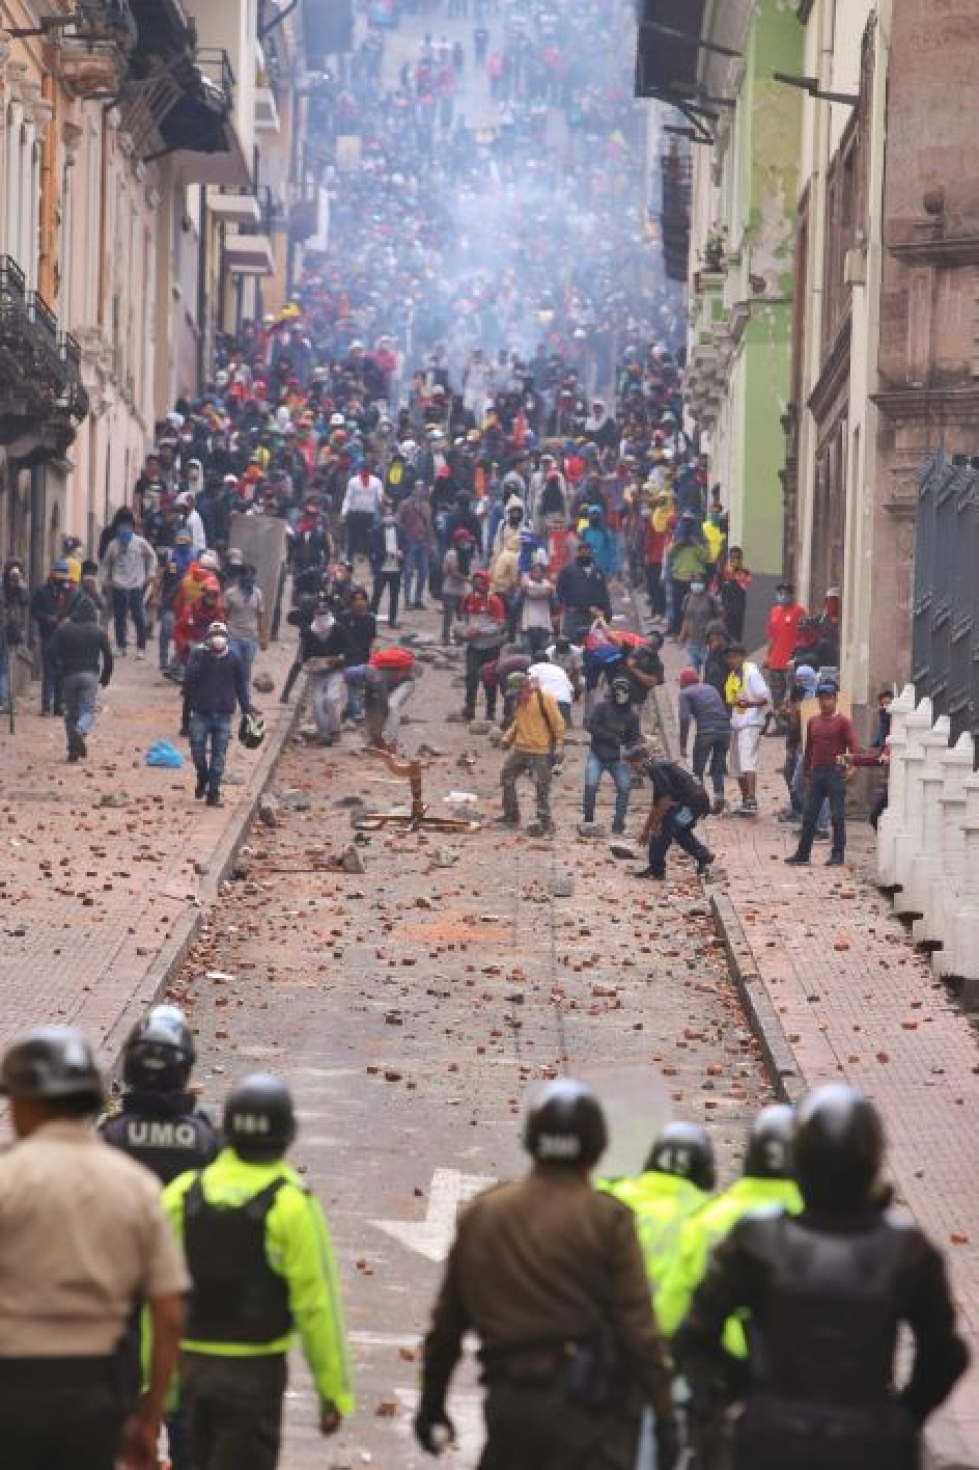 Quiton historiallisesta keskustasta on tullut yhteenottojen näyttämö. Lehtikuva/AFP